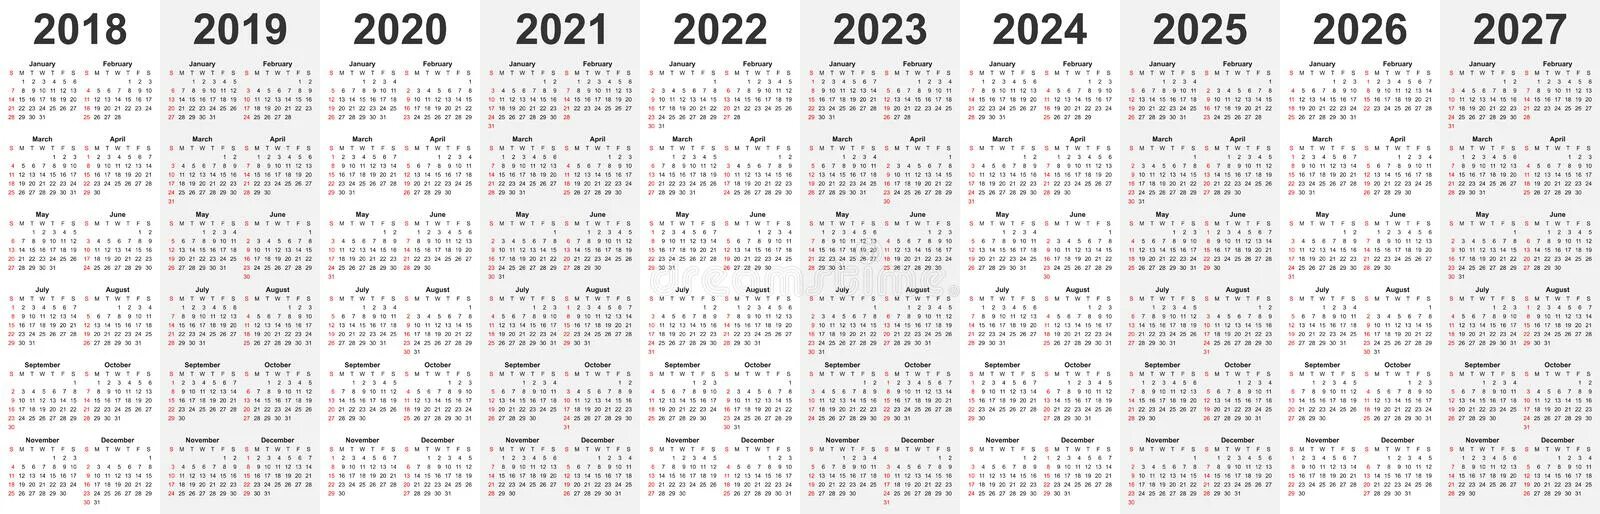 Выходные в 2025 году в январе. Календарь 2019 2020 2021 2022. 2019 2020 2021 2022 2023. (−2021) ( − 2021 ) + + (−2020) ( − 2020 ) + + (−2019) ( − 2019 ) + + ... + + 2022 2022 + + 2023 2023 .. 2020 2021 2022 2023 2024 2025.